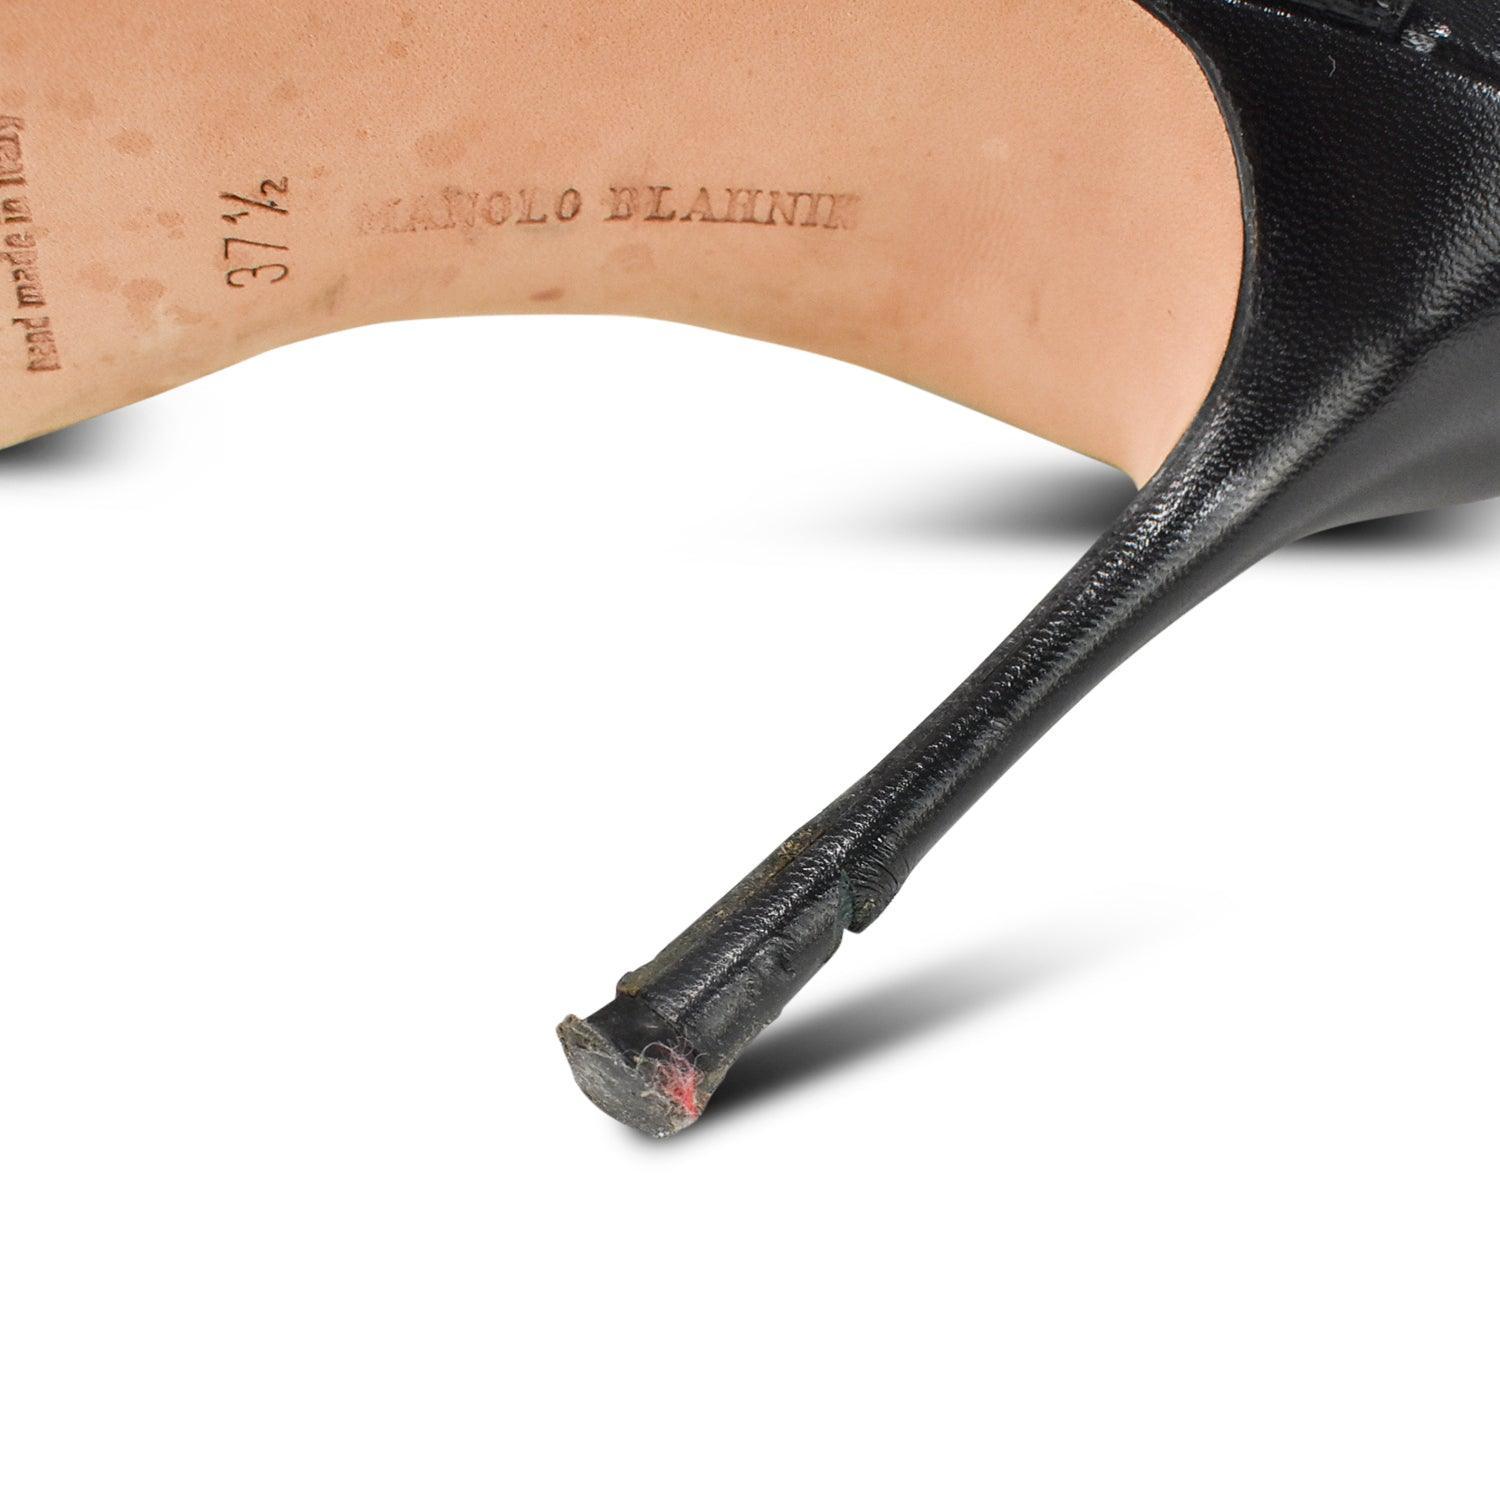 Manolo Blahnik Stiletto Heels - Women's 37.5 - Fashionably Yours